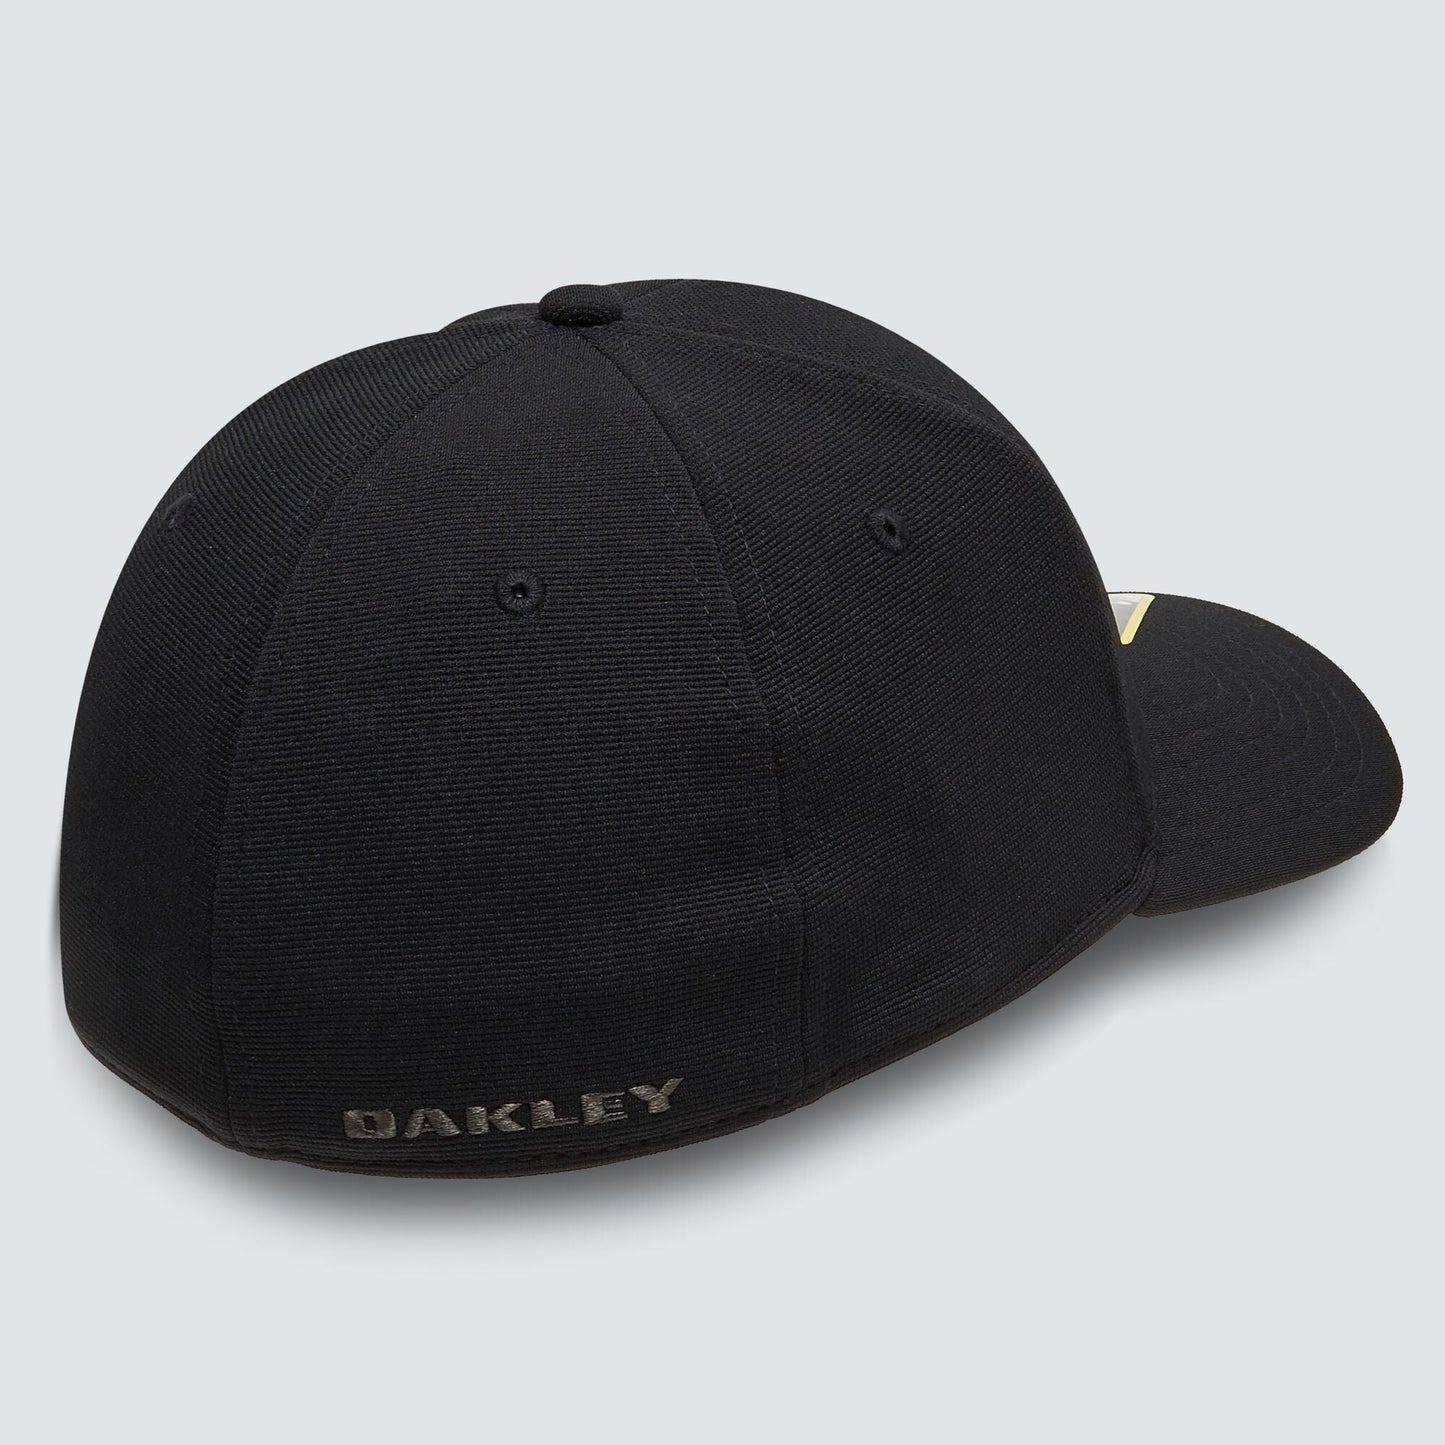 Oakley - Tincan Remix Cap - Blackout - Velocity 21